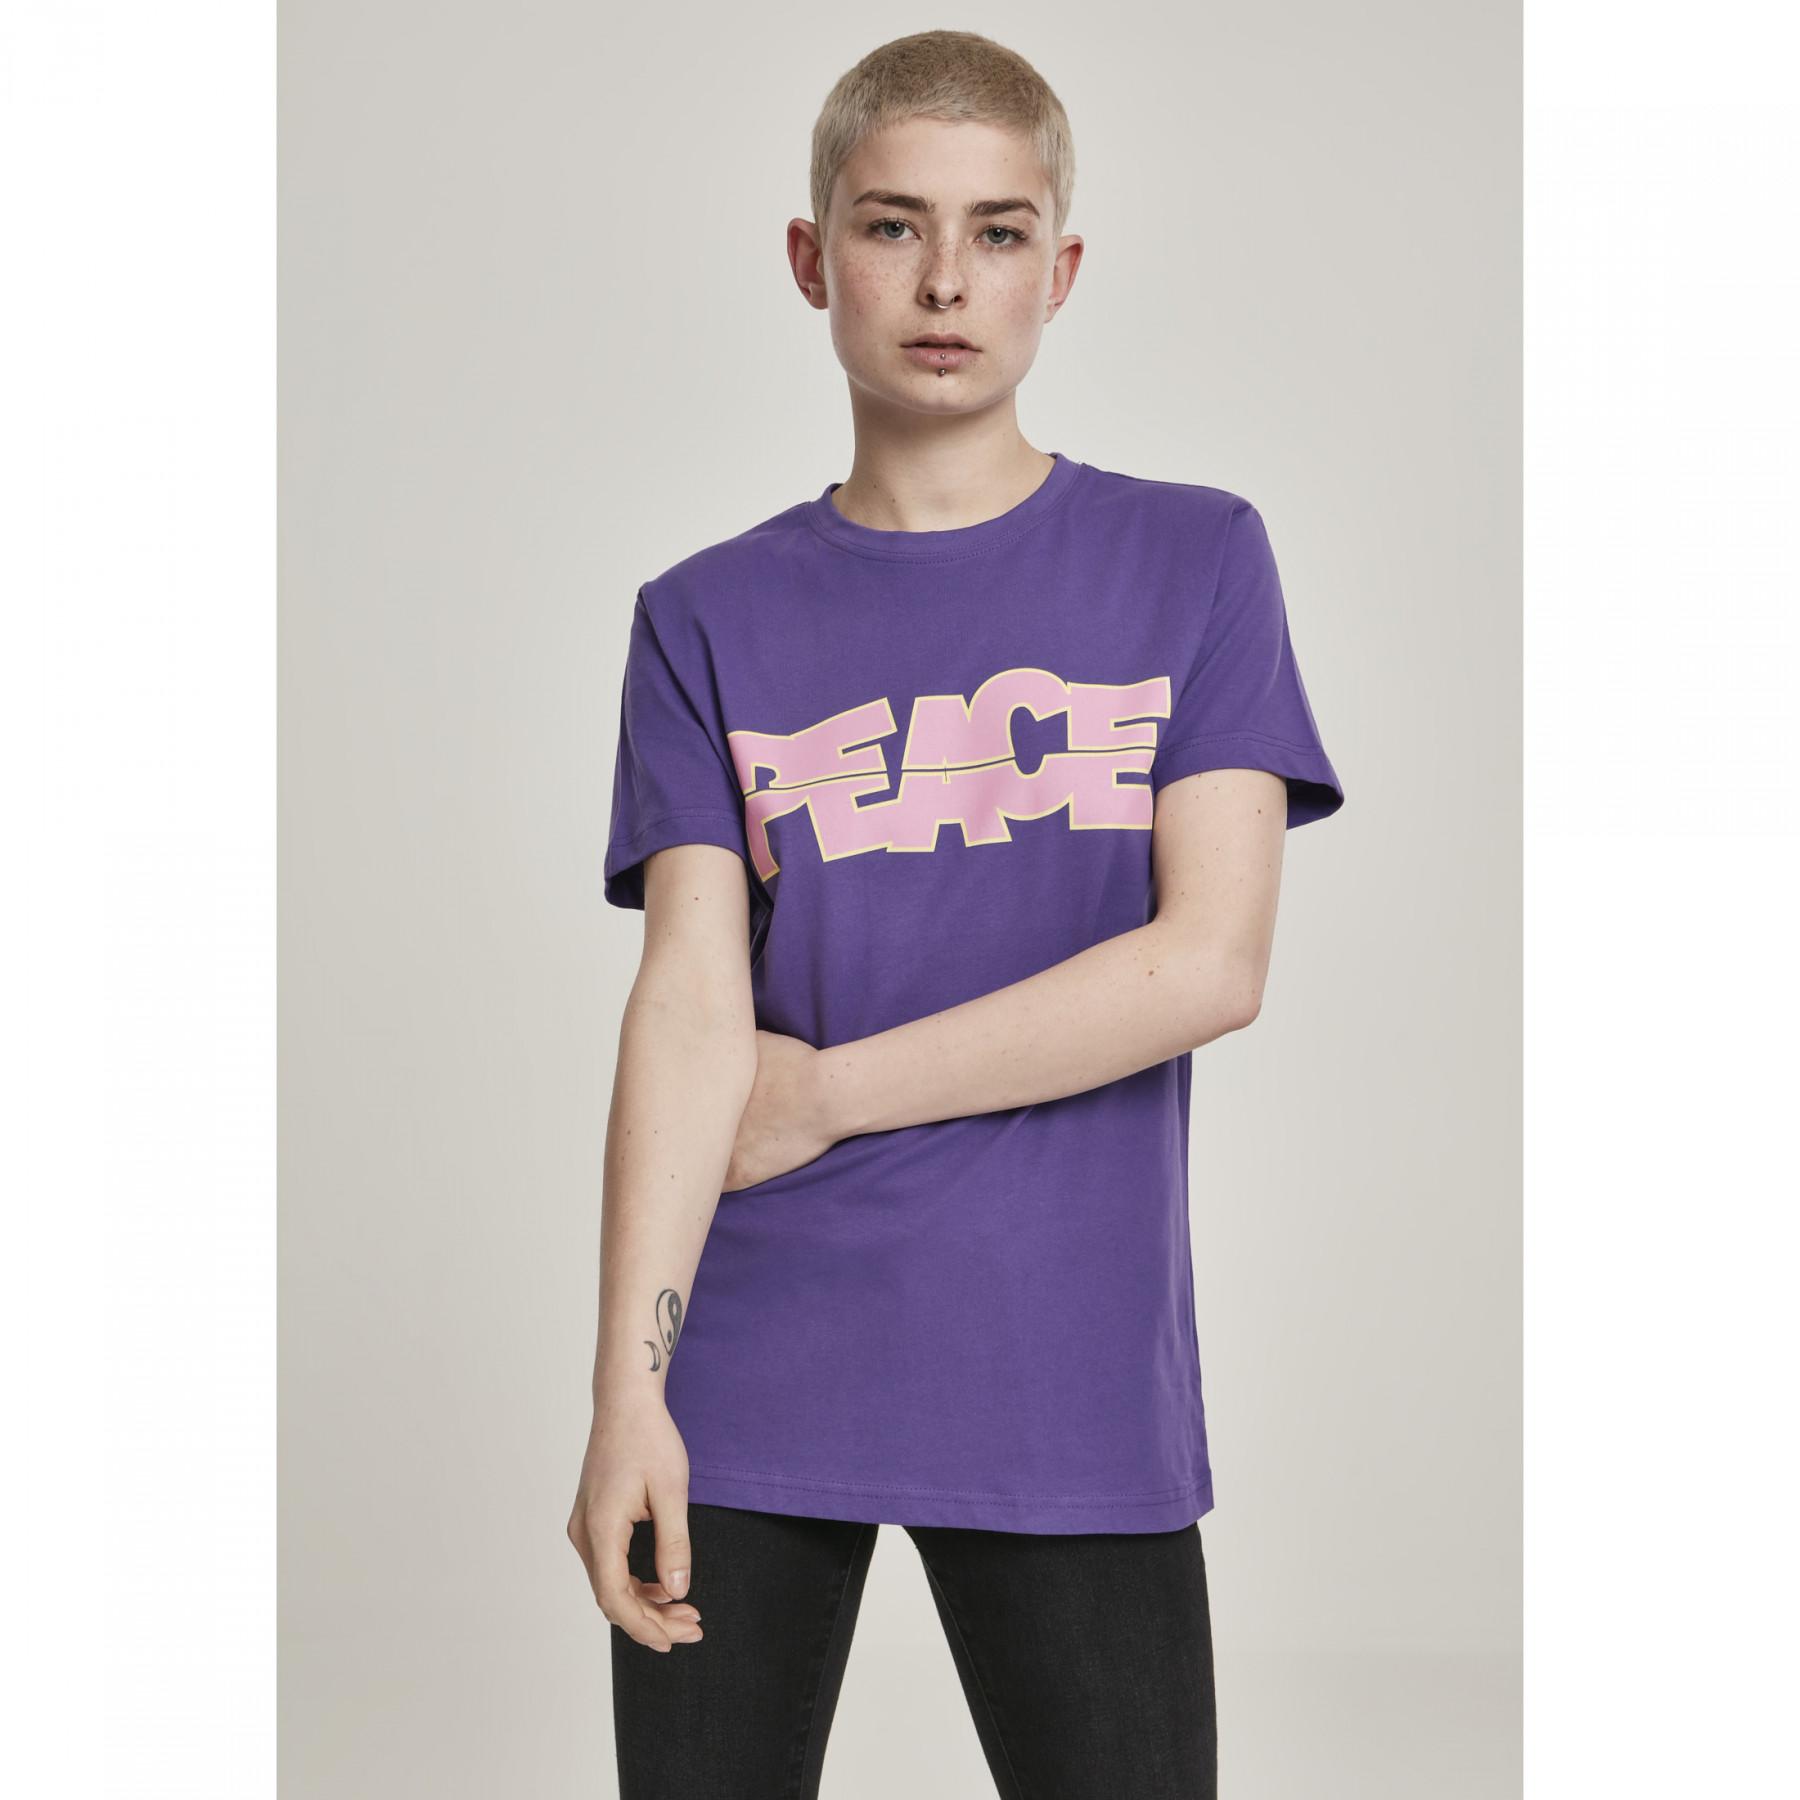 Camiseta mujer Mister Tee peace